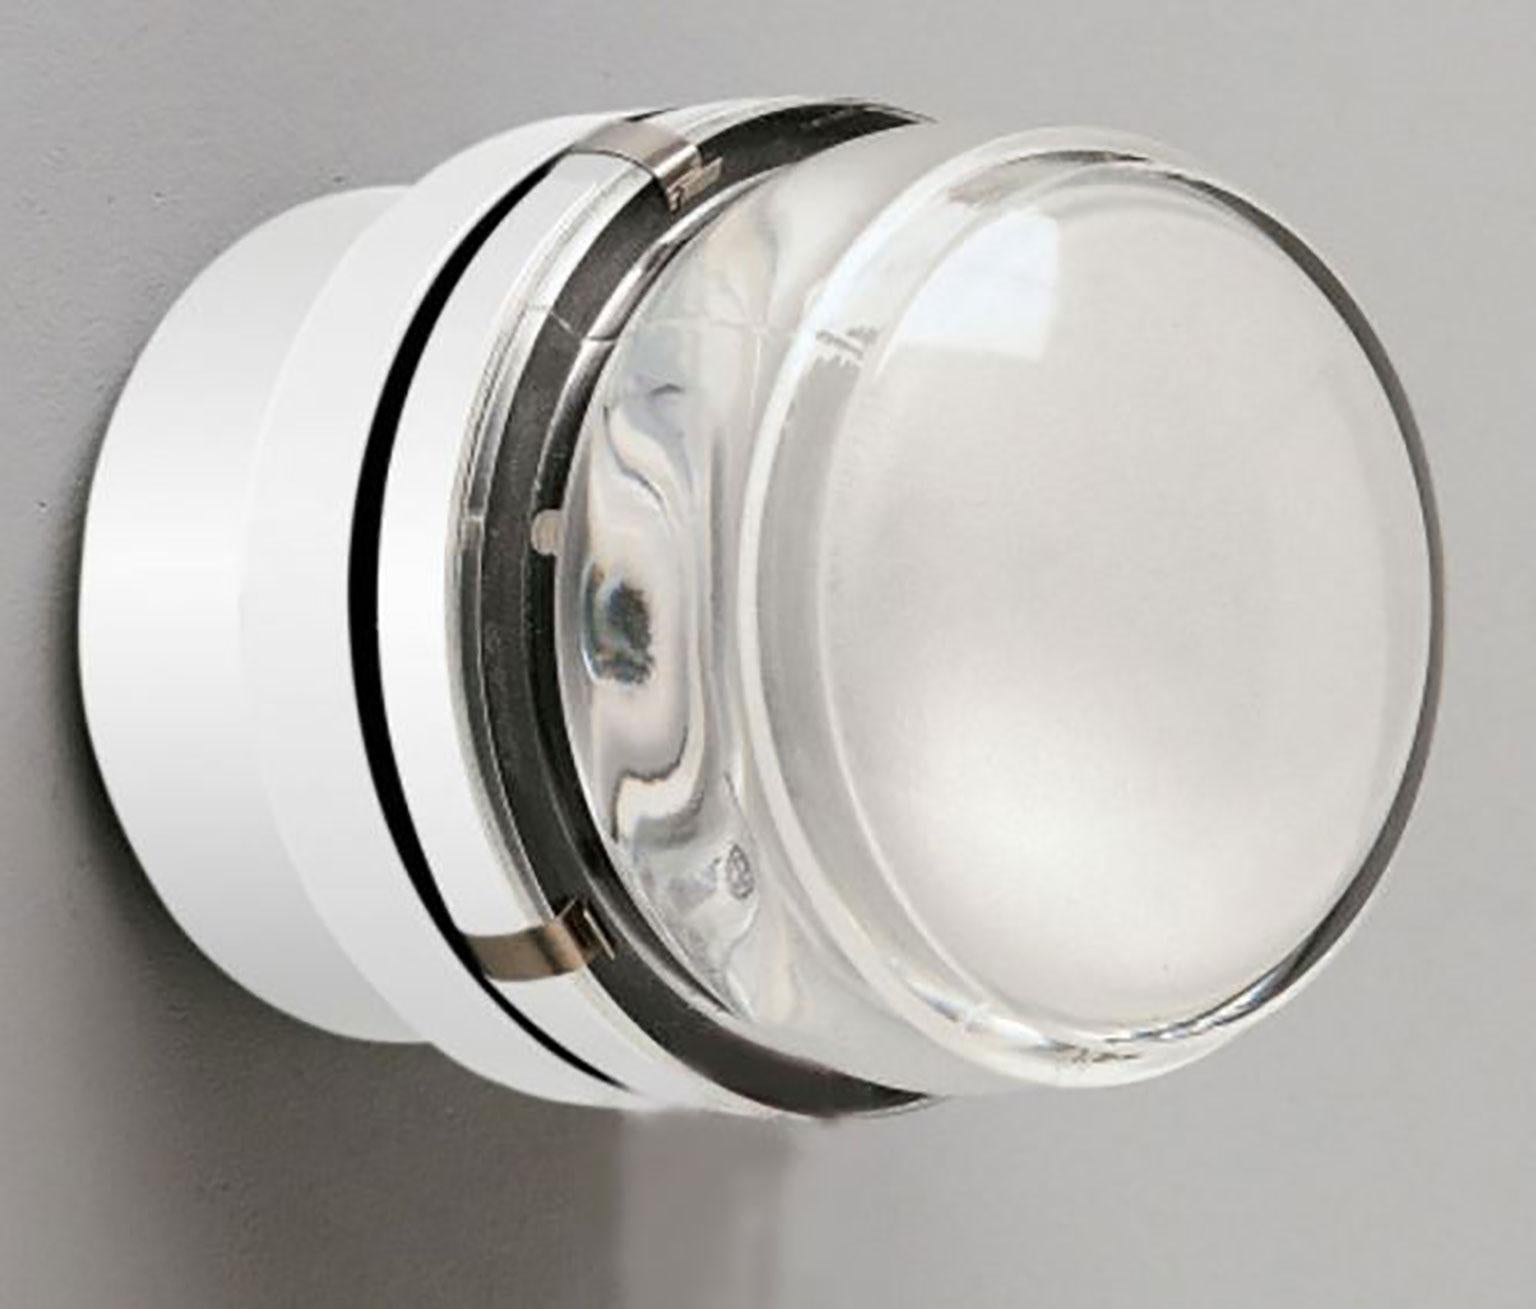 Applique Fresnel conçue par Joe Colombo pour Oluce. Simple et intemporelle, cette lampe produit à la fois une lumière directe et diffuse. L'appareil est fabriqué en aluminium chromé. La lentille de la lampe est en verre de haute qualité. Disponible